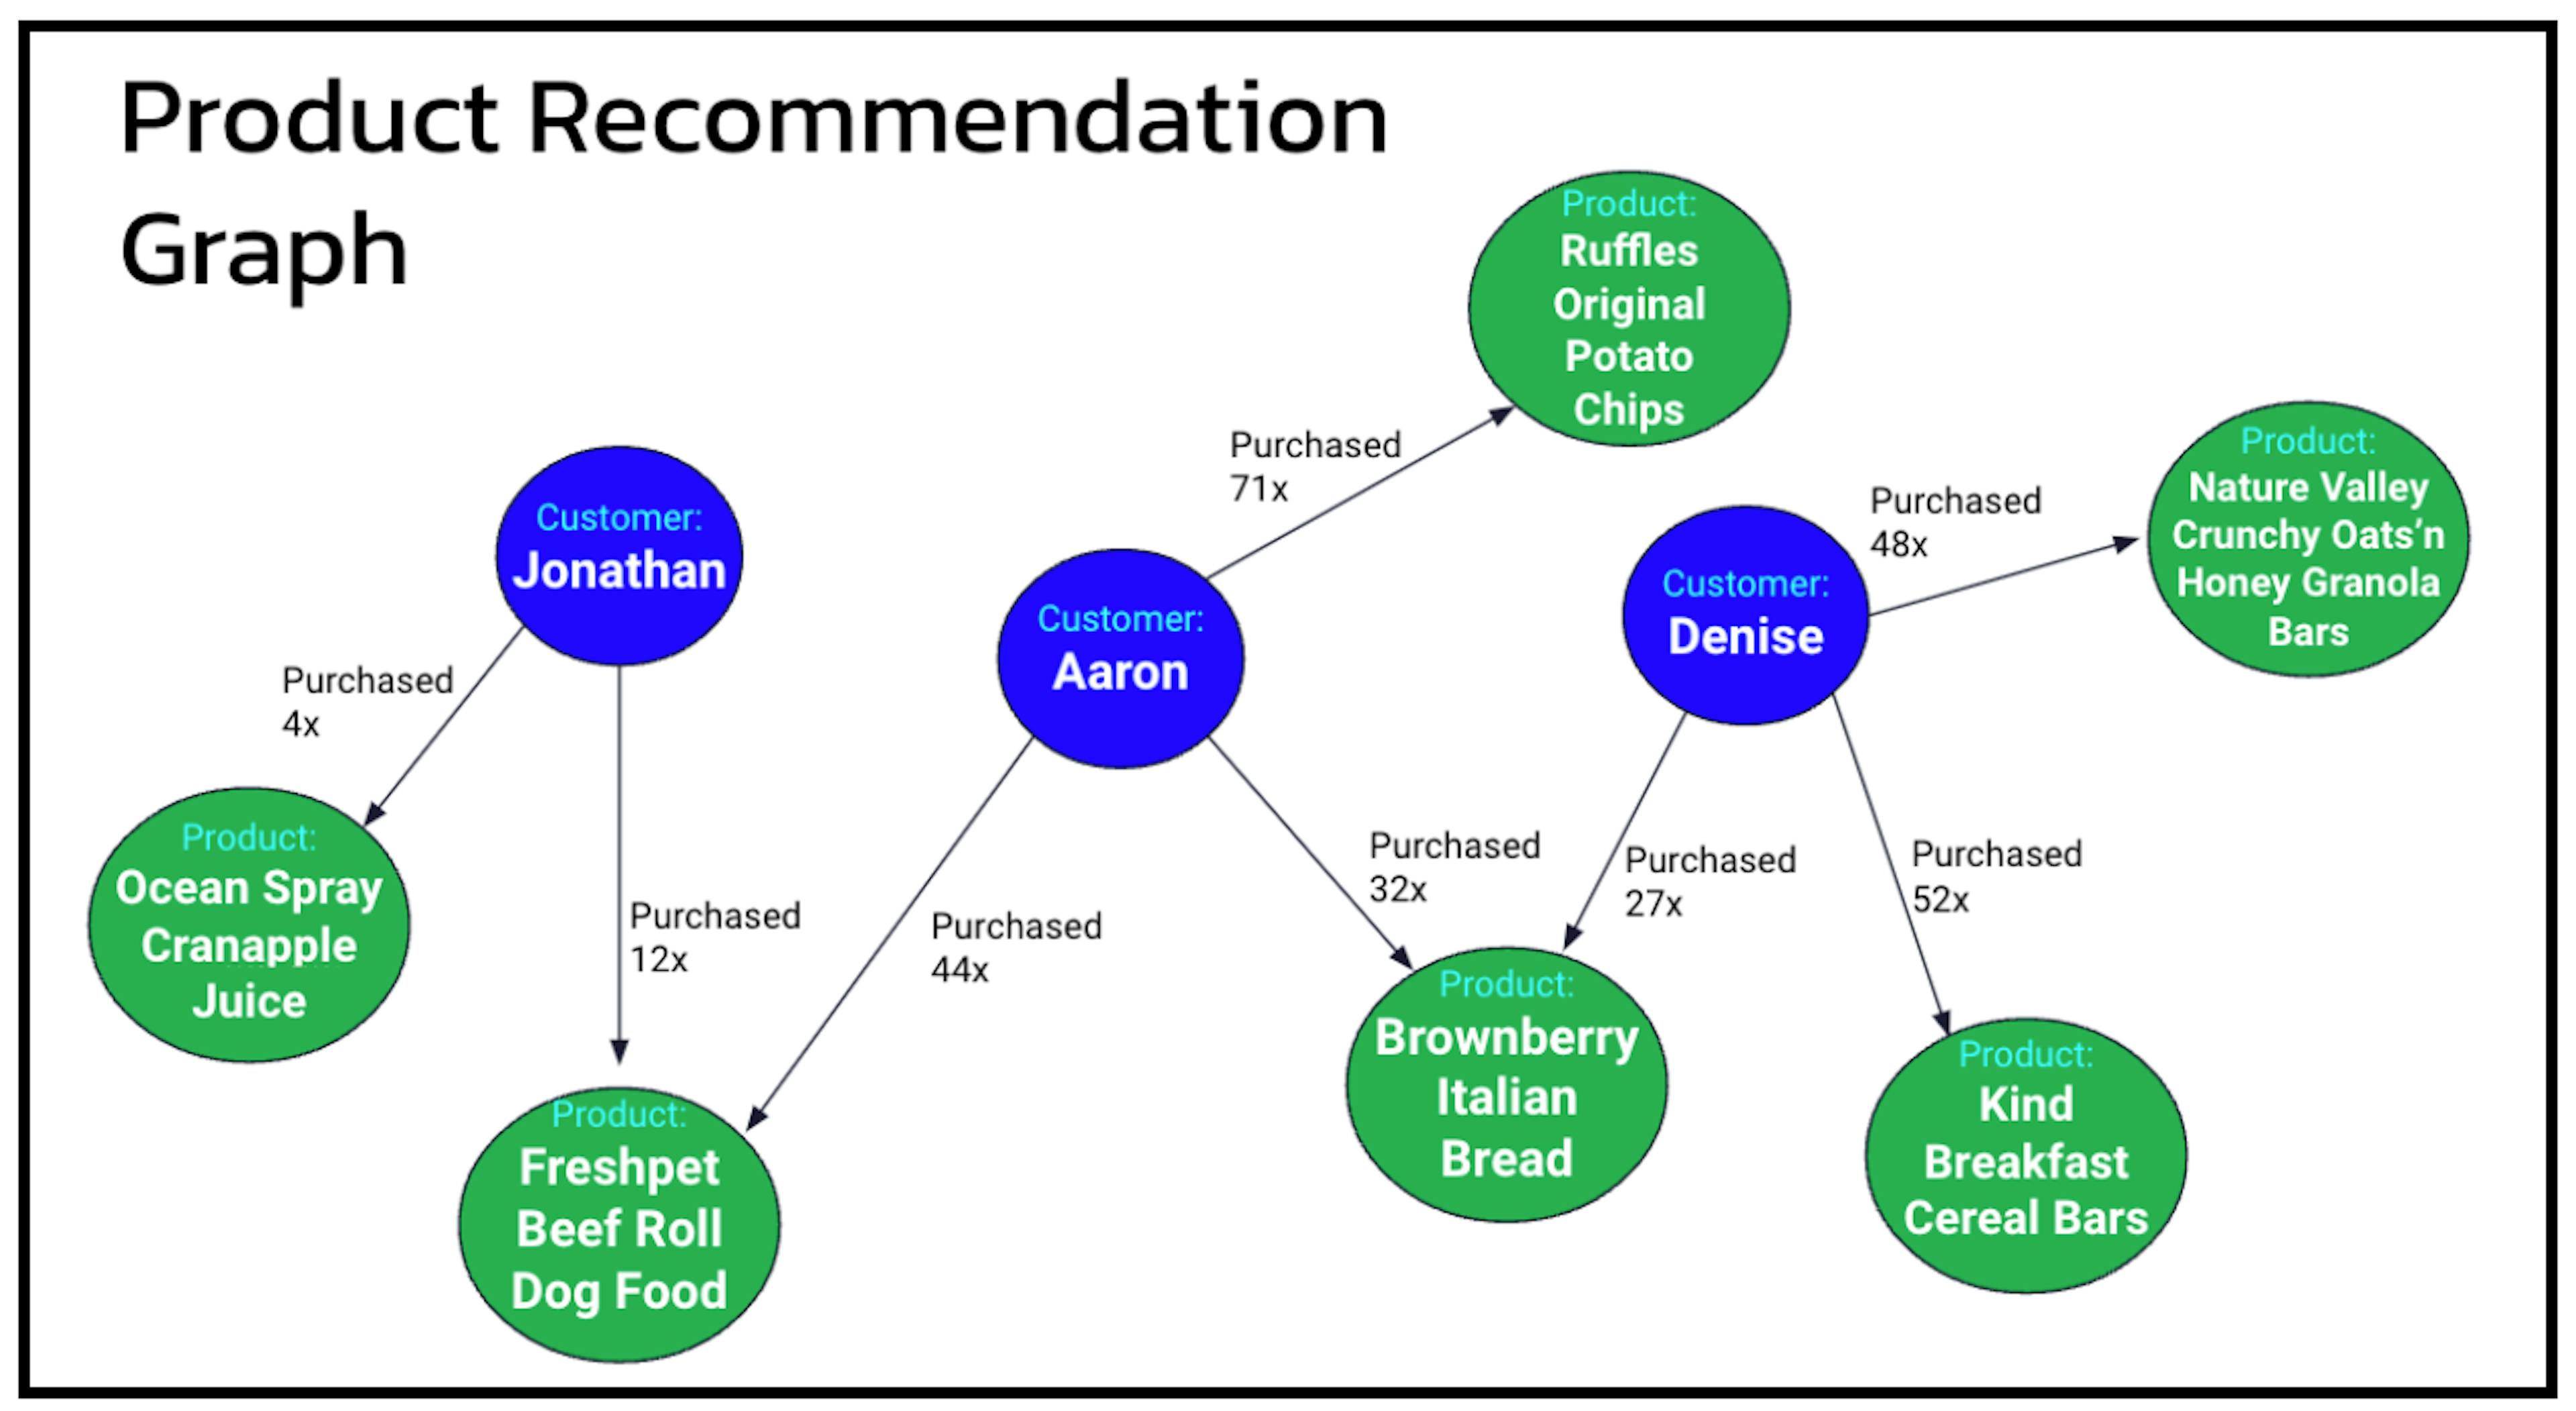 Figure 1 - Un graphique de recommandation de produit montrant la relation entre les clients et leurs produits achetés.